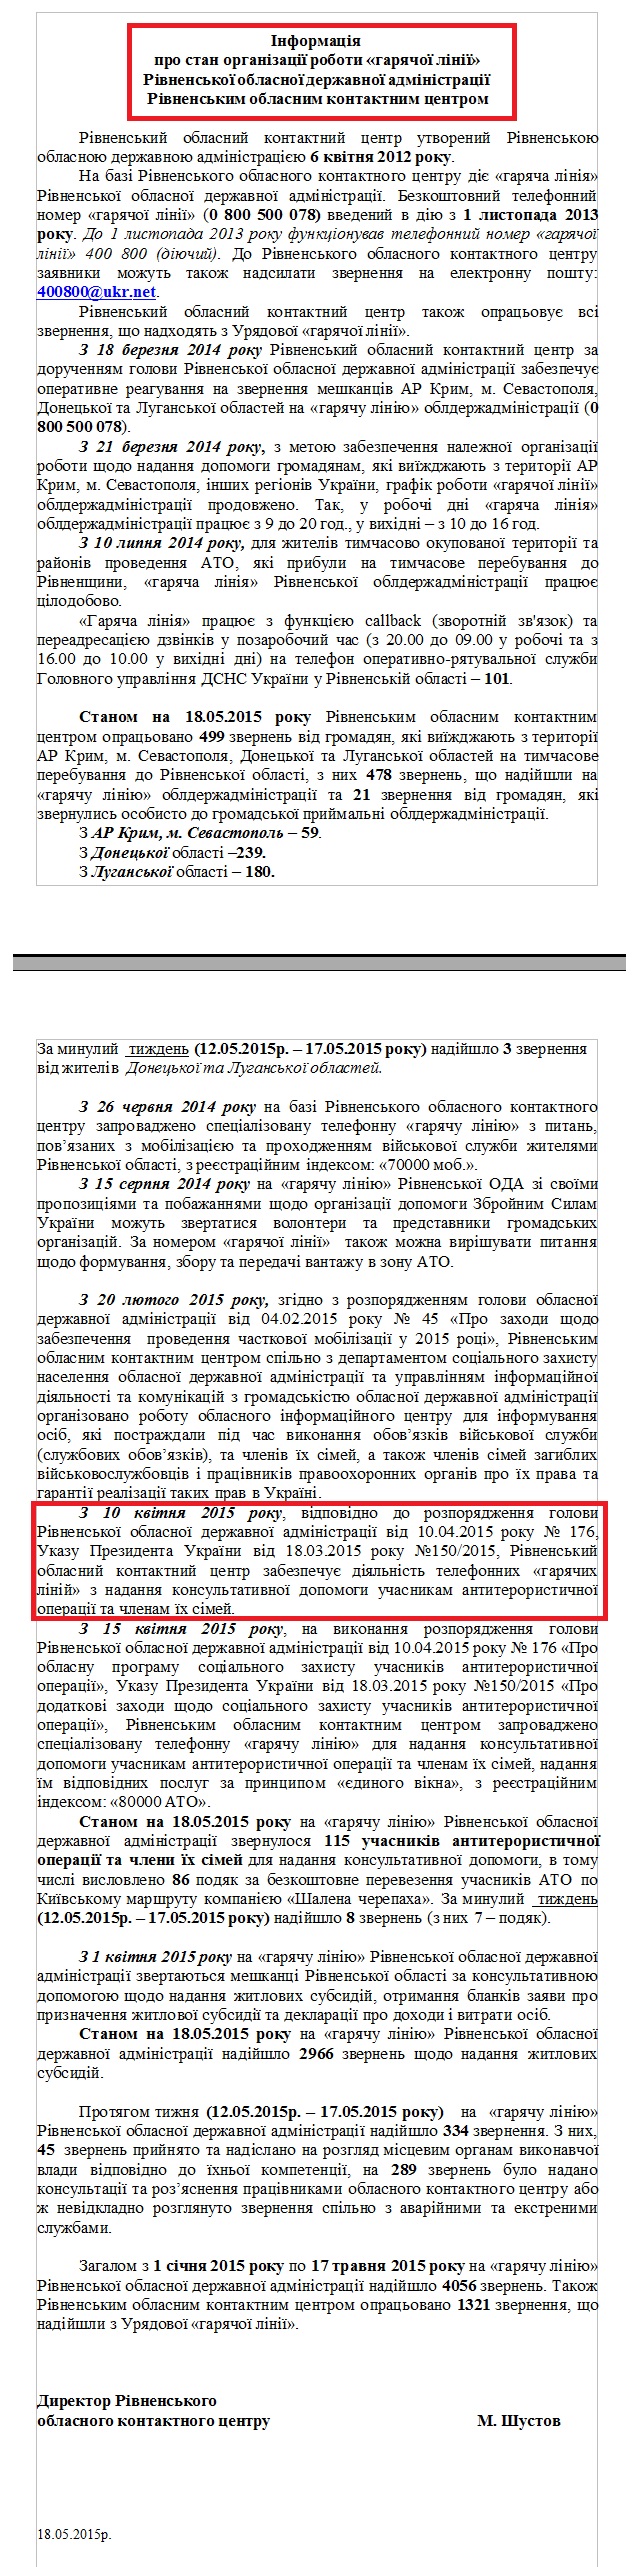 Лист Рівненського обласного контактного центру М. Шустова